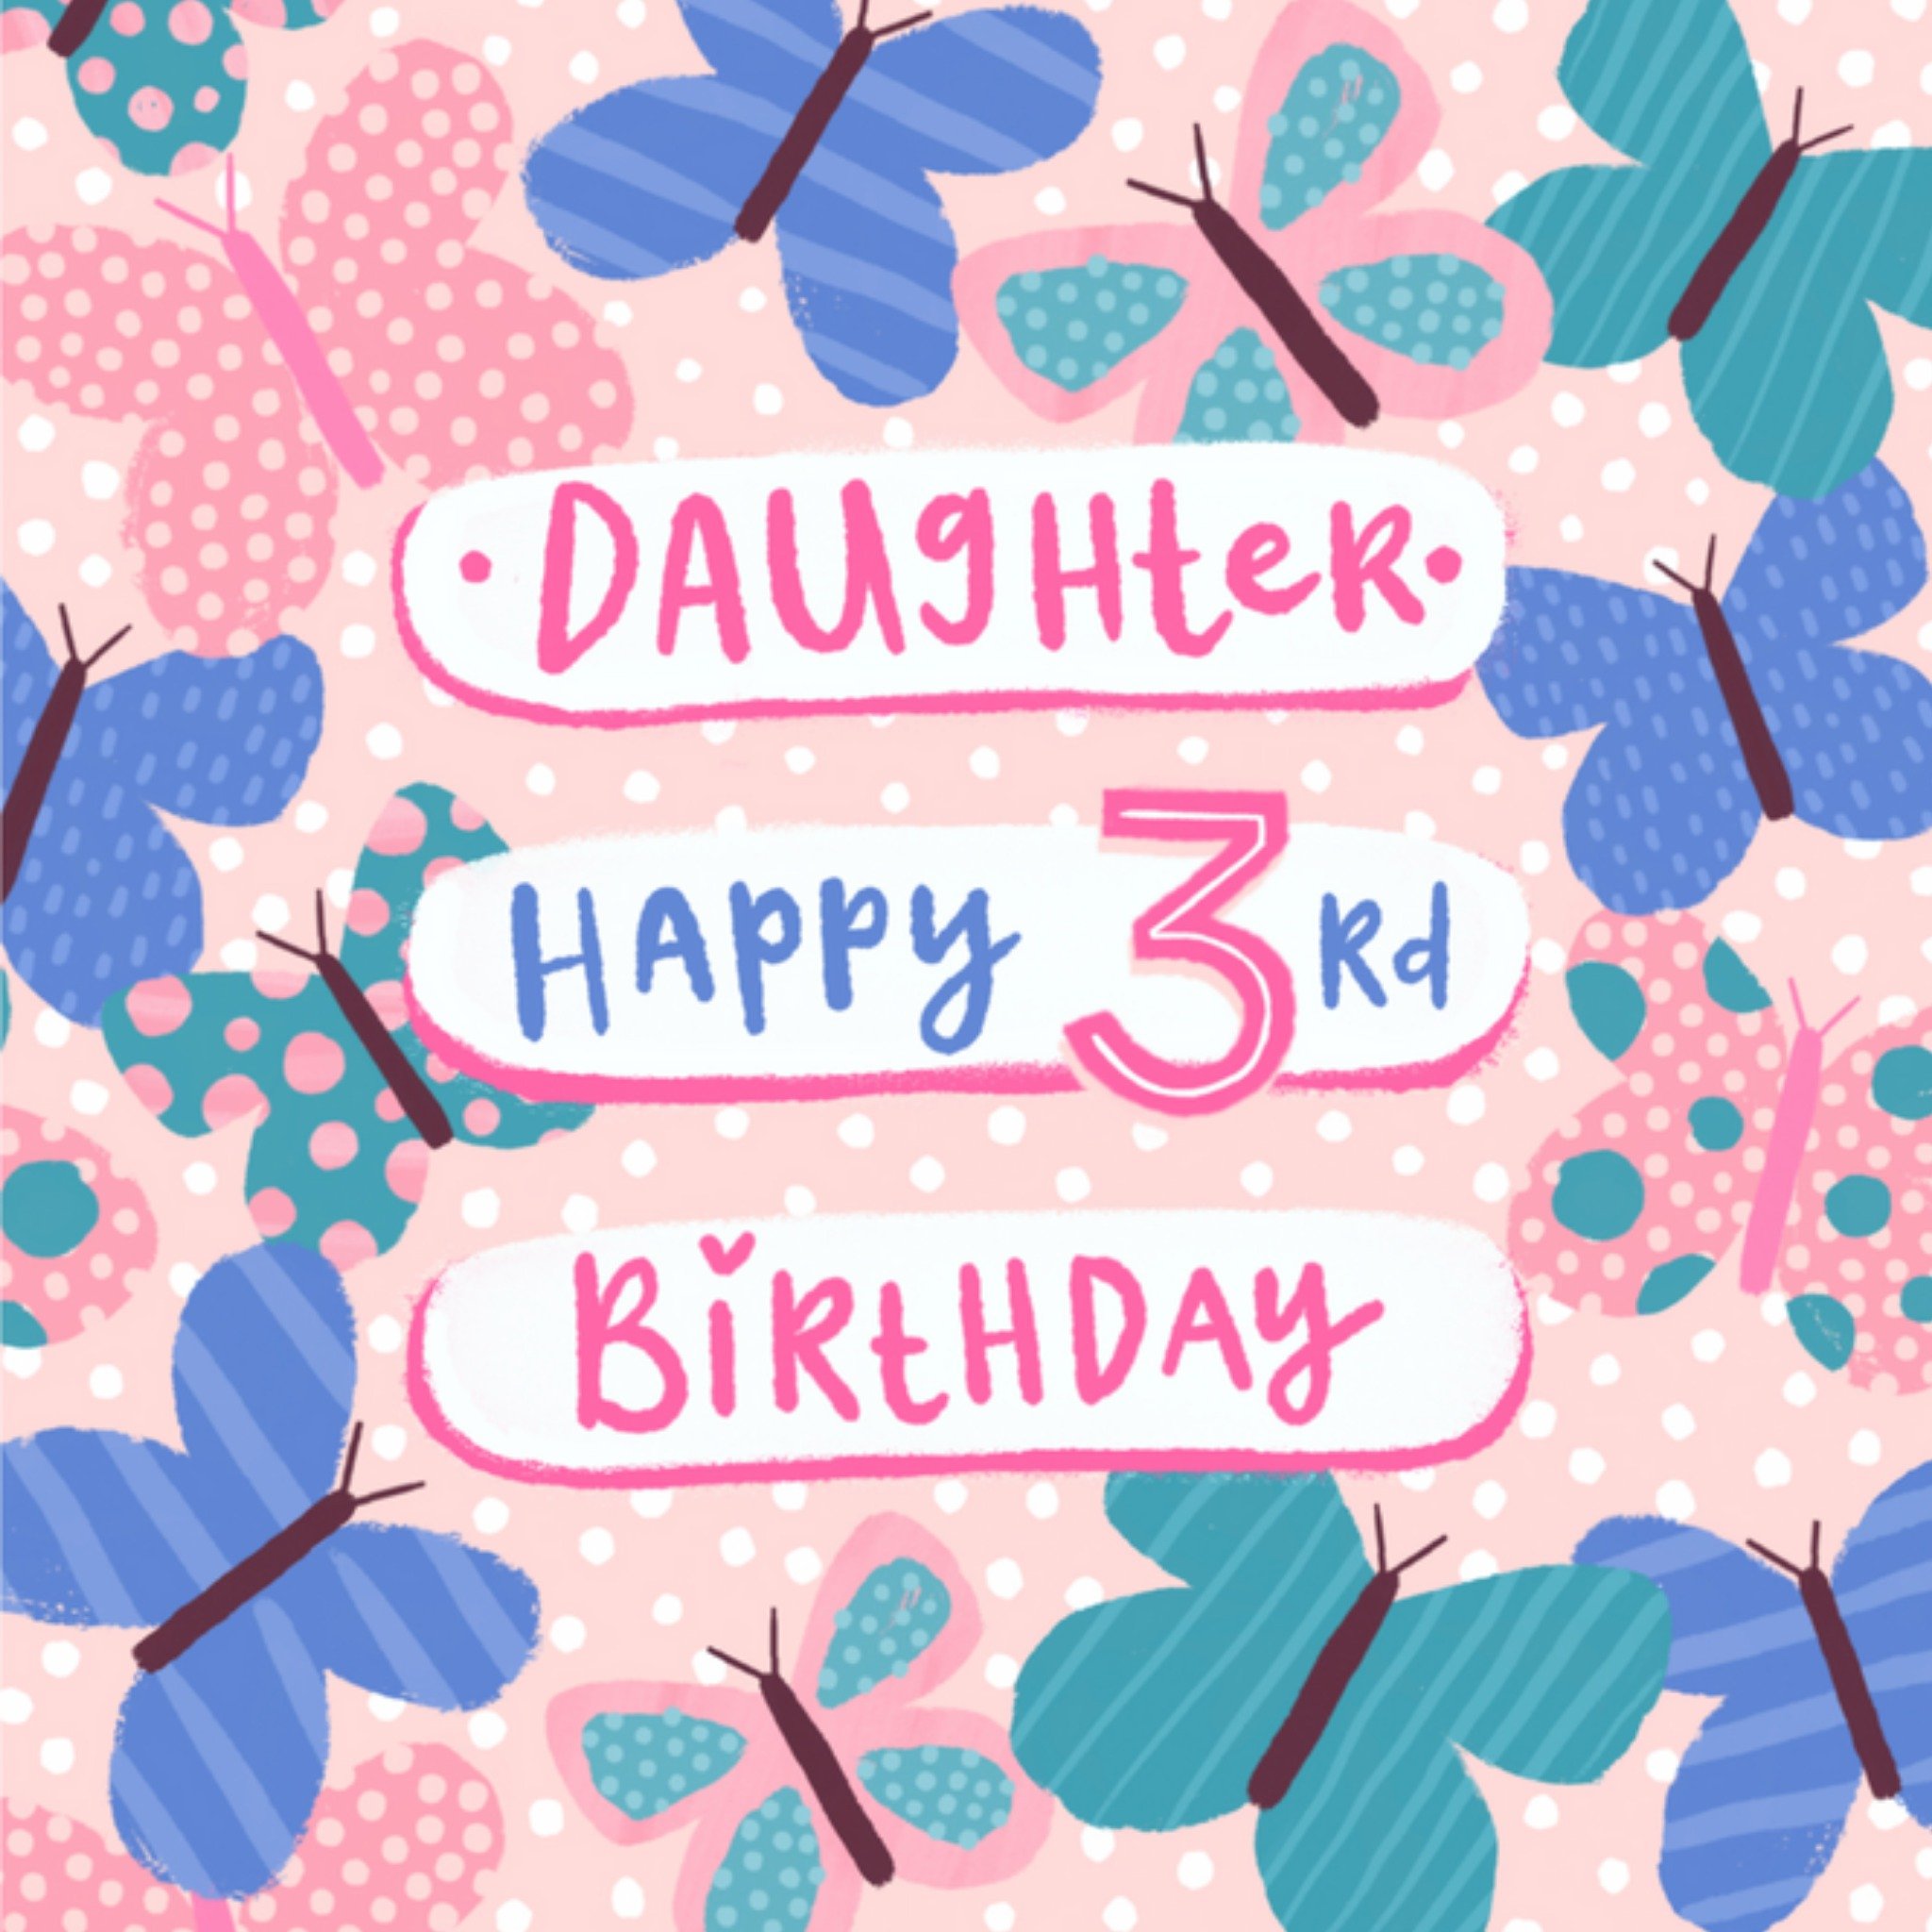 Verjaardagskaart - Happy 3rd birthday